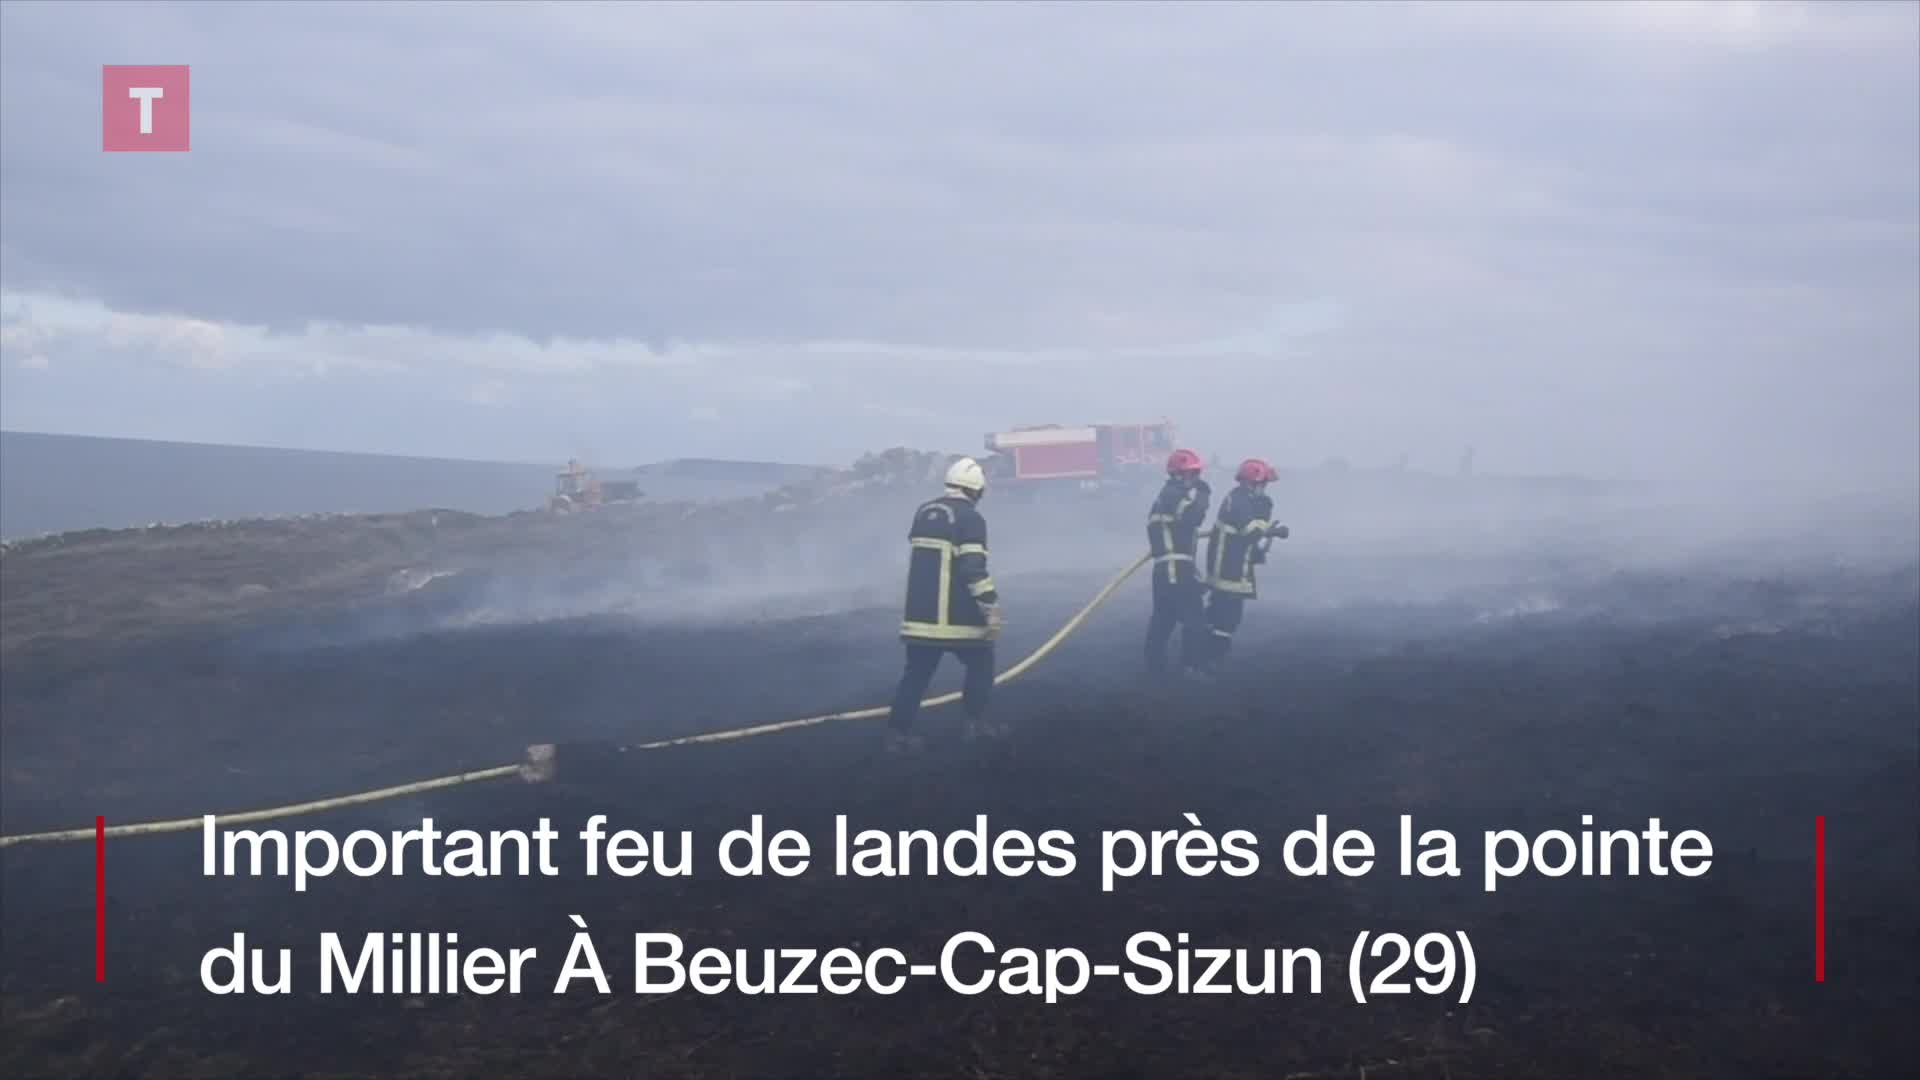 À Beuzec-Cap-Sizun, important feu de landes près de la pointe du Millier (Le Télégramme)